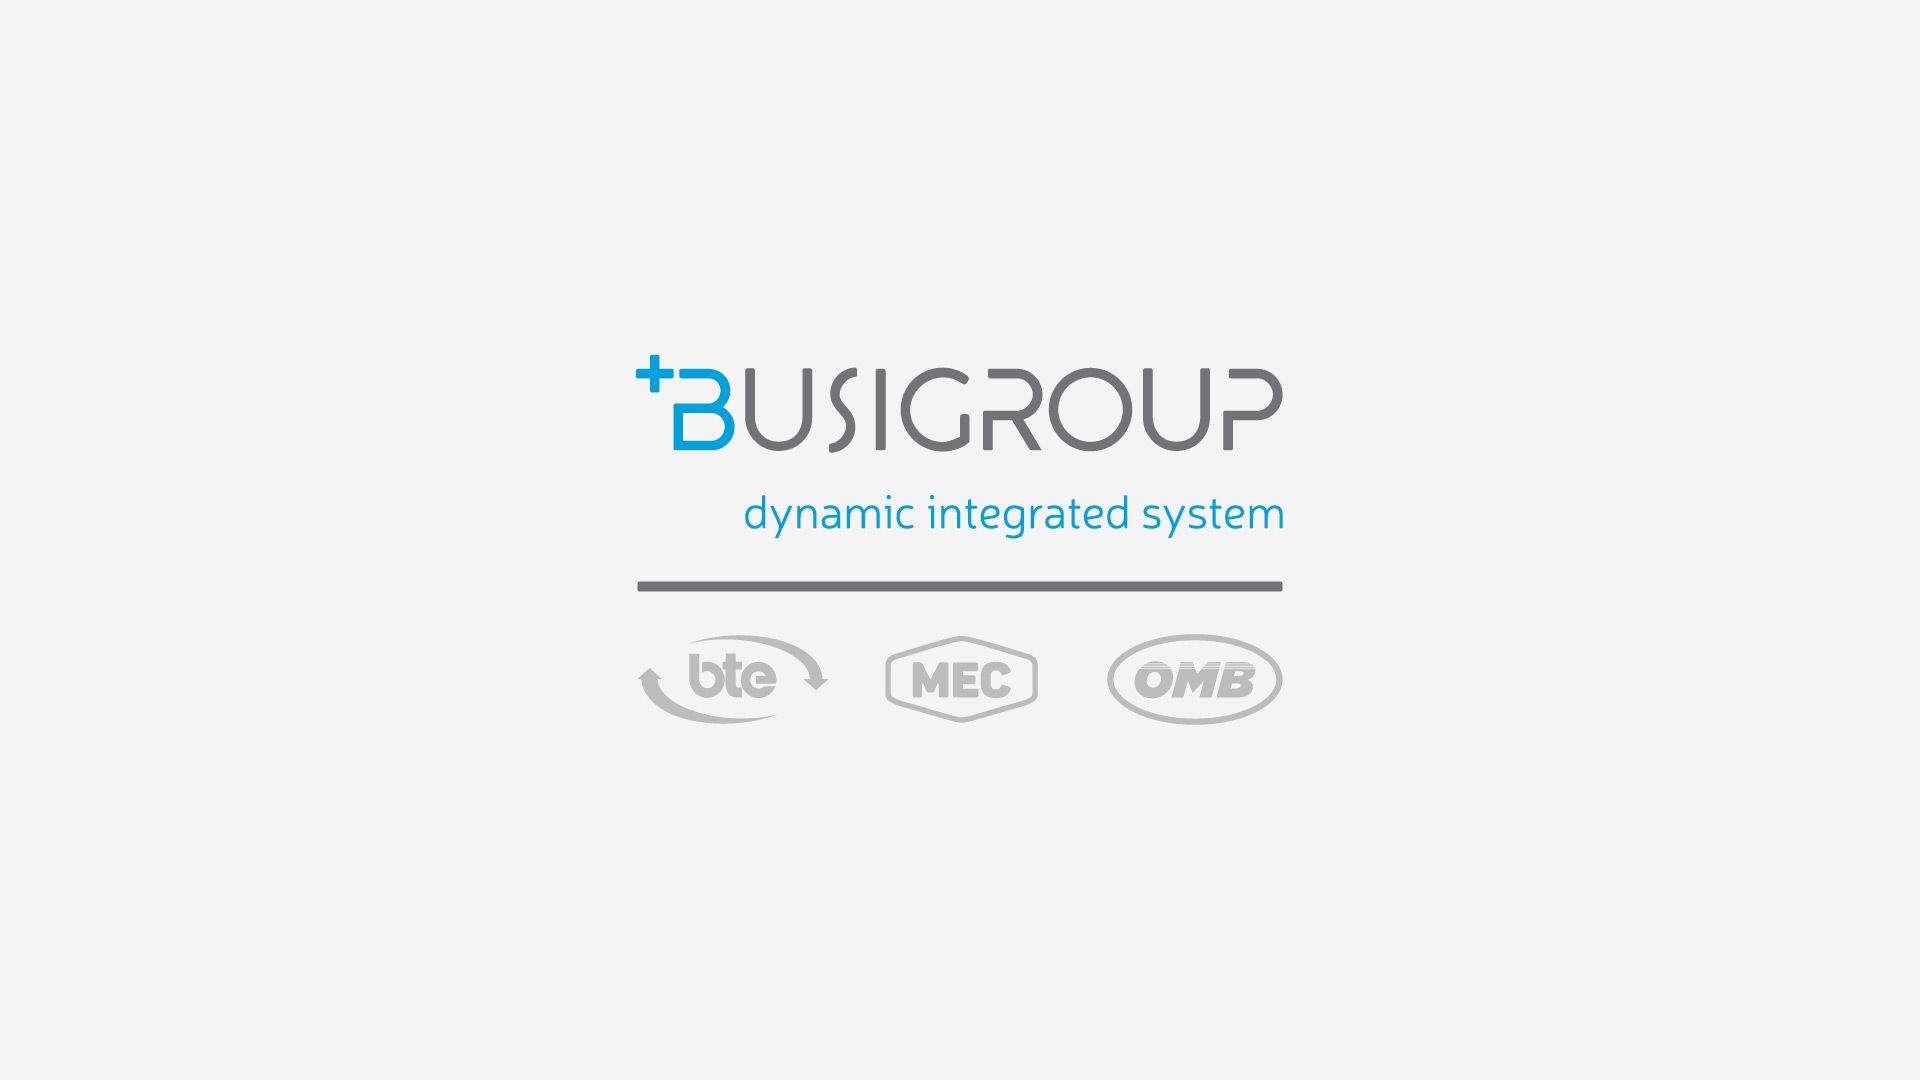 Busi Group